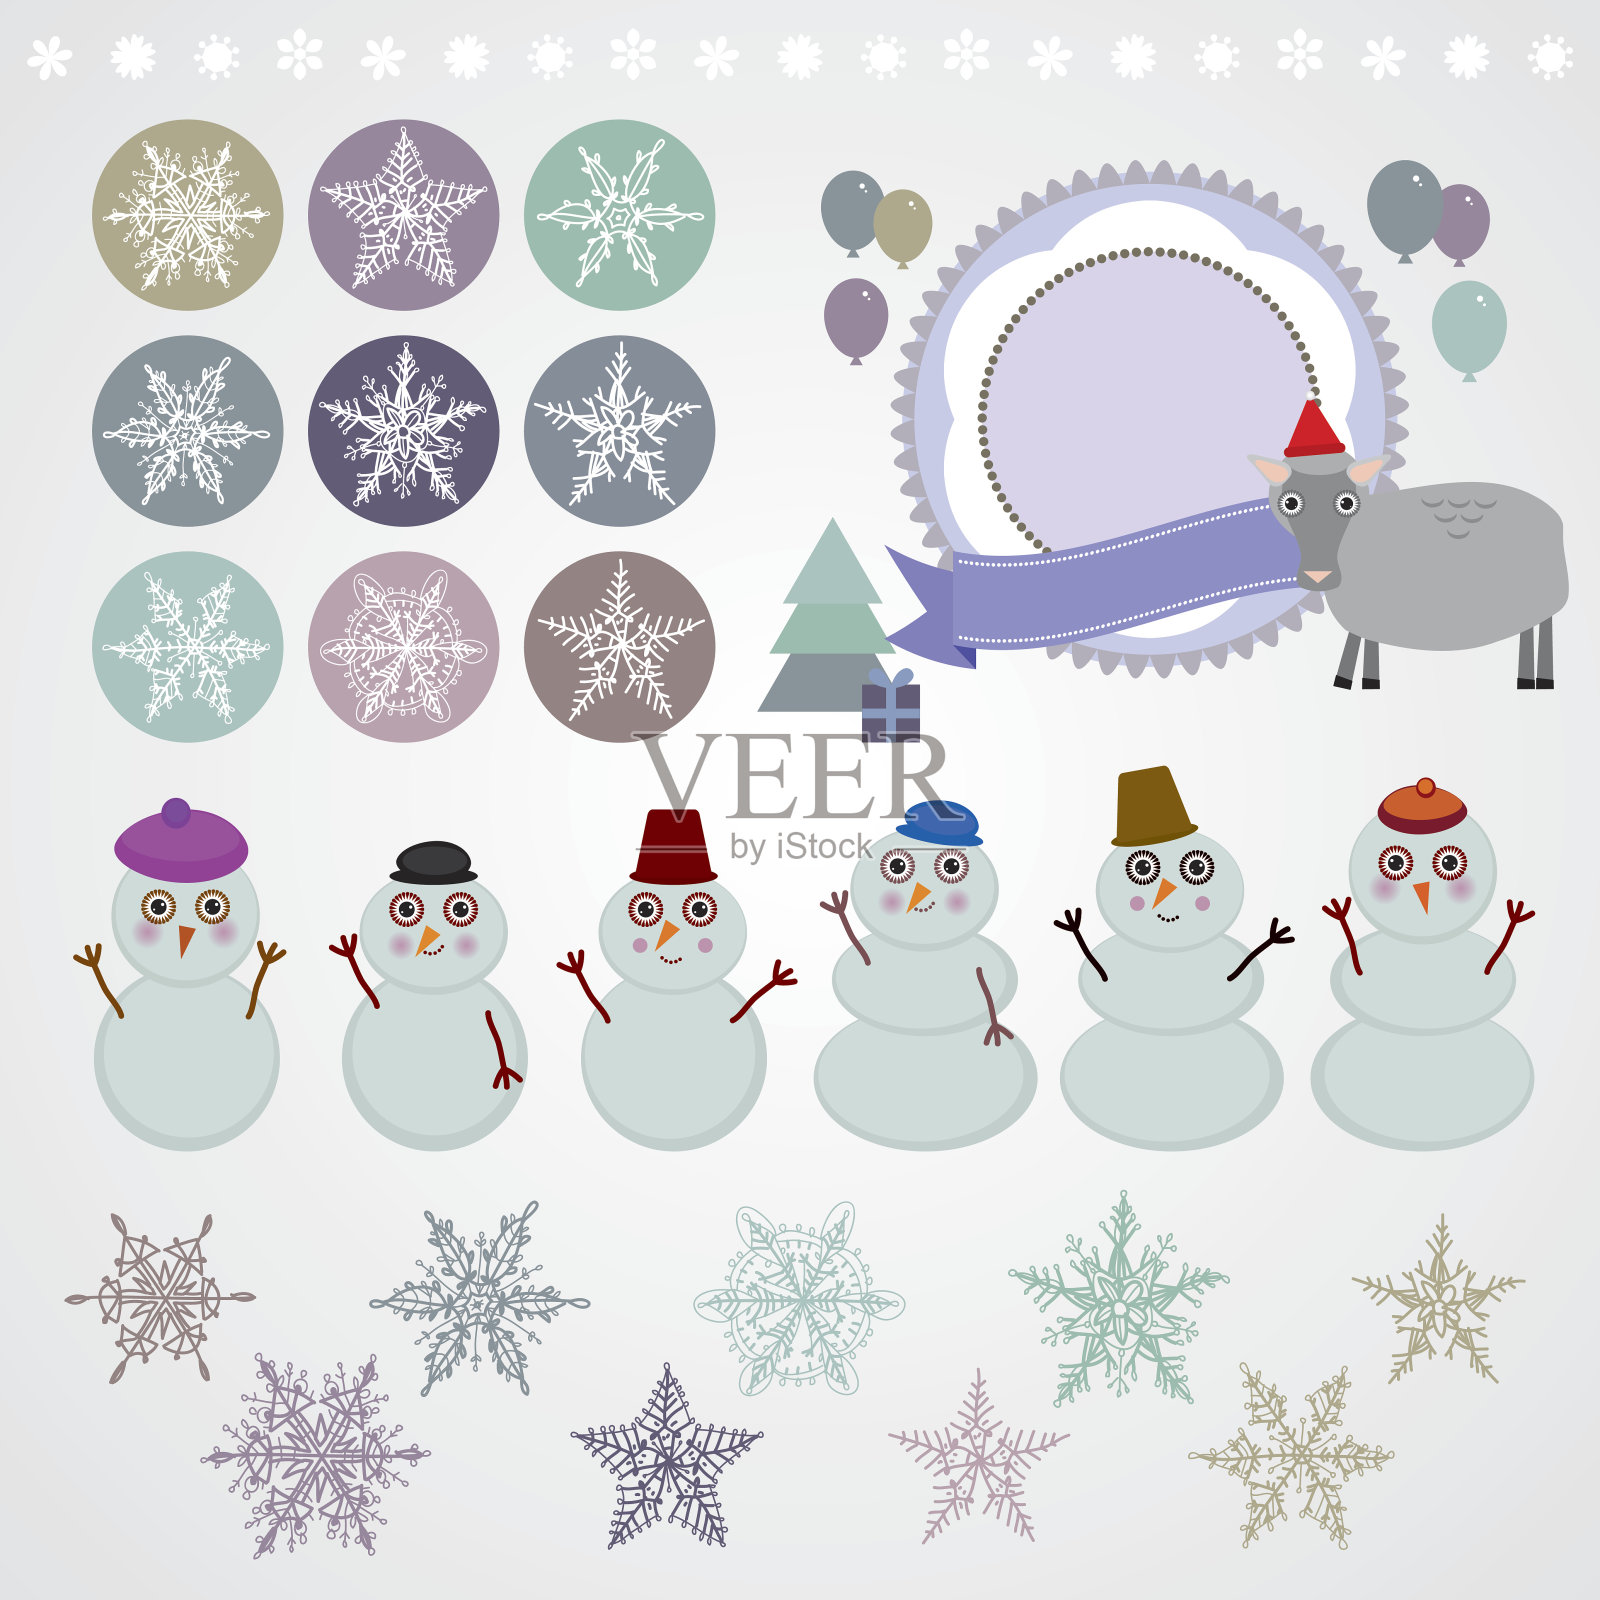 字集新年雪花、雪人、绵羊、圣诞树、礼物。插画图片素材